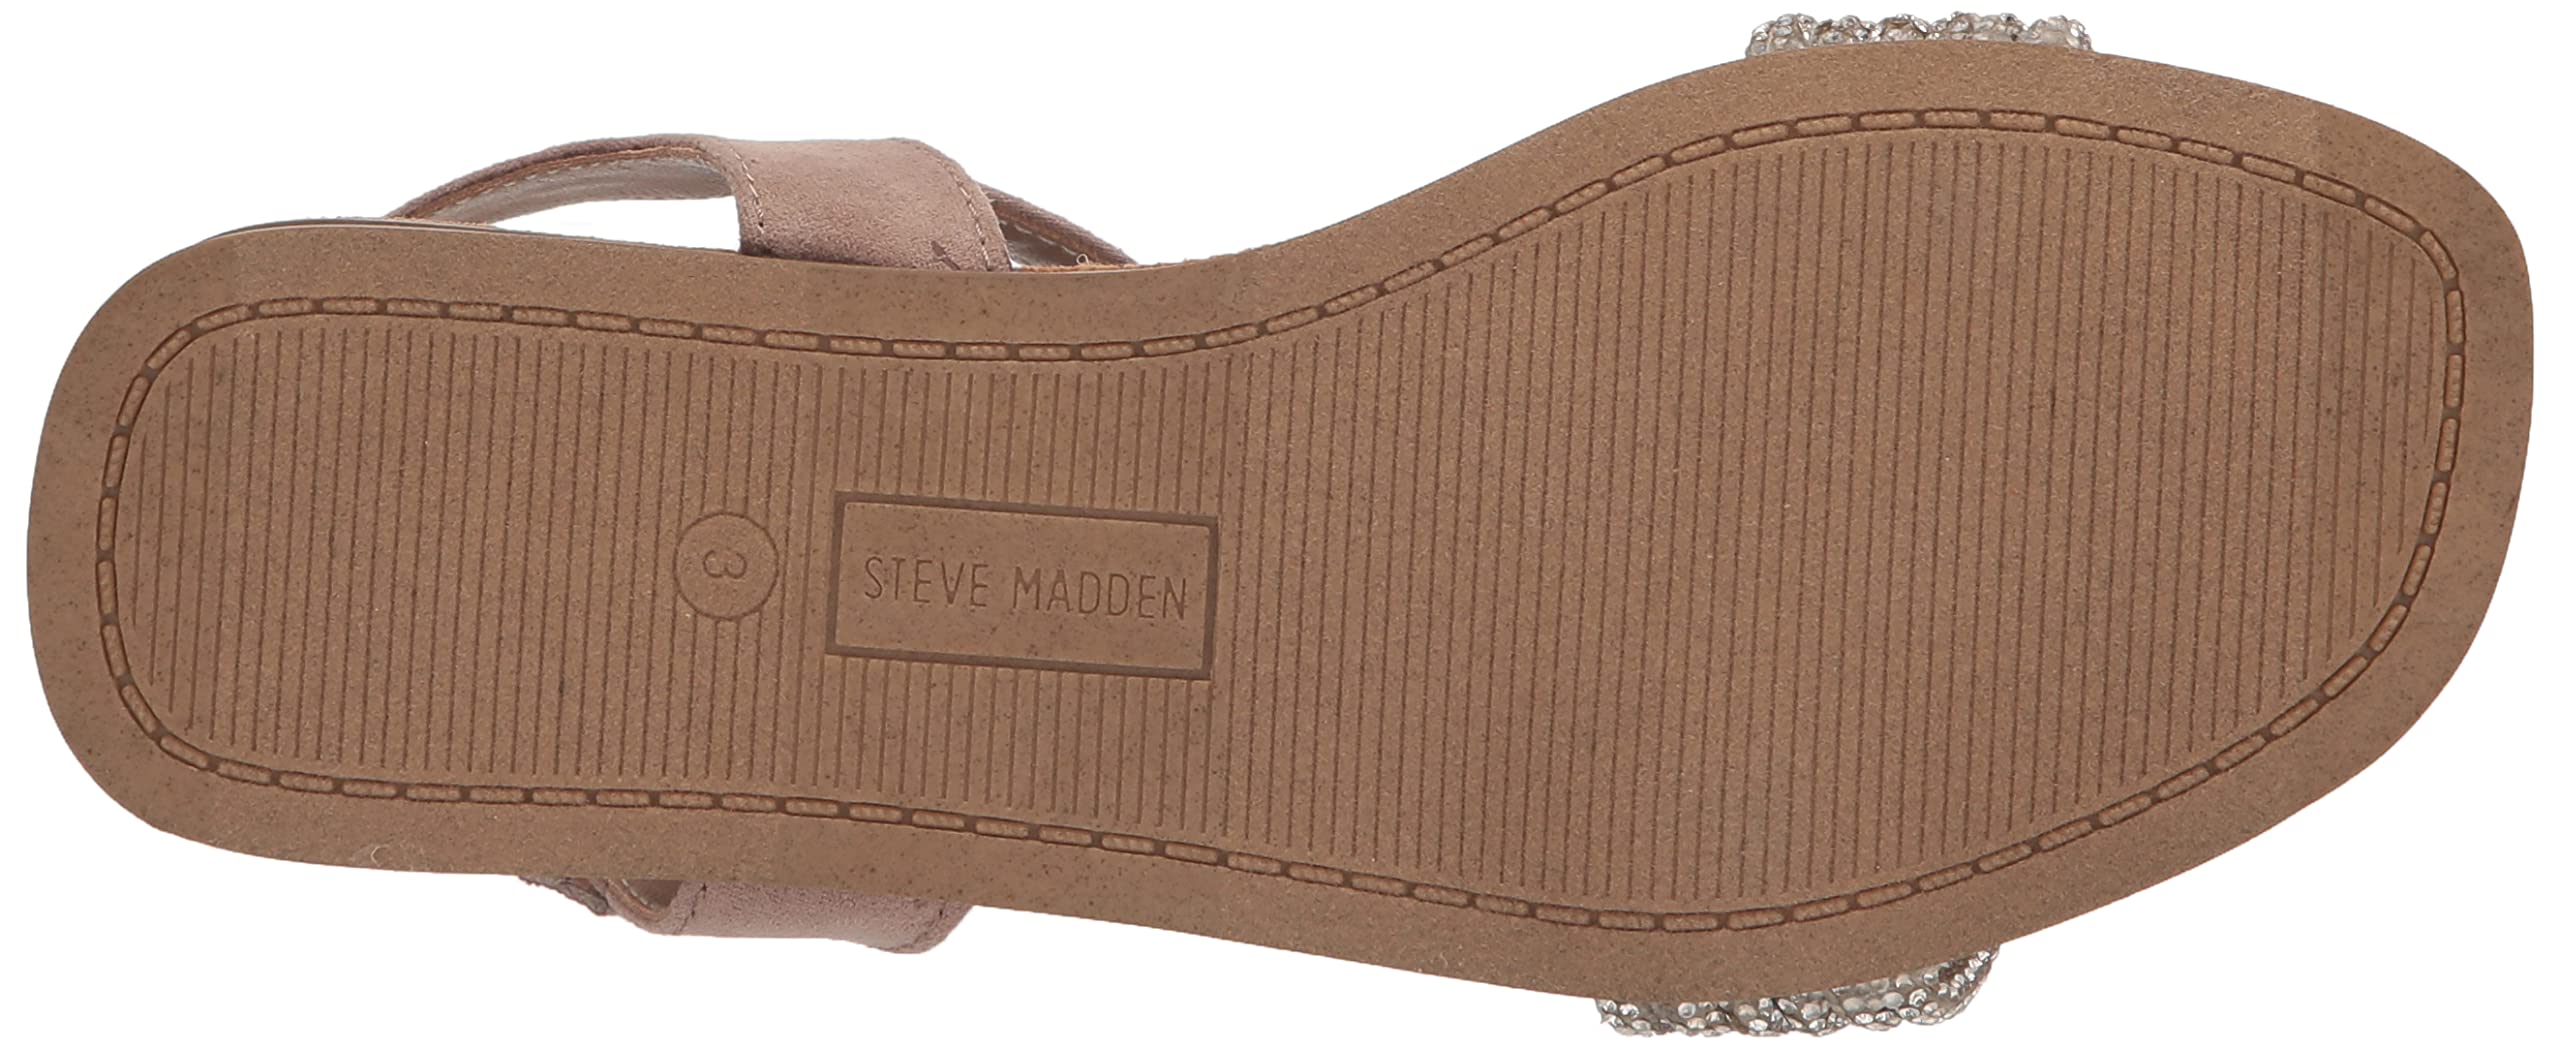 Steve Madden Girls Shoes Unisex-Child Adore Flat Sandal